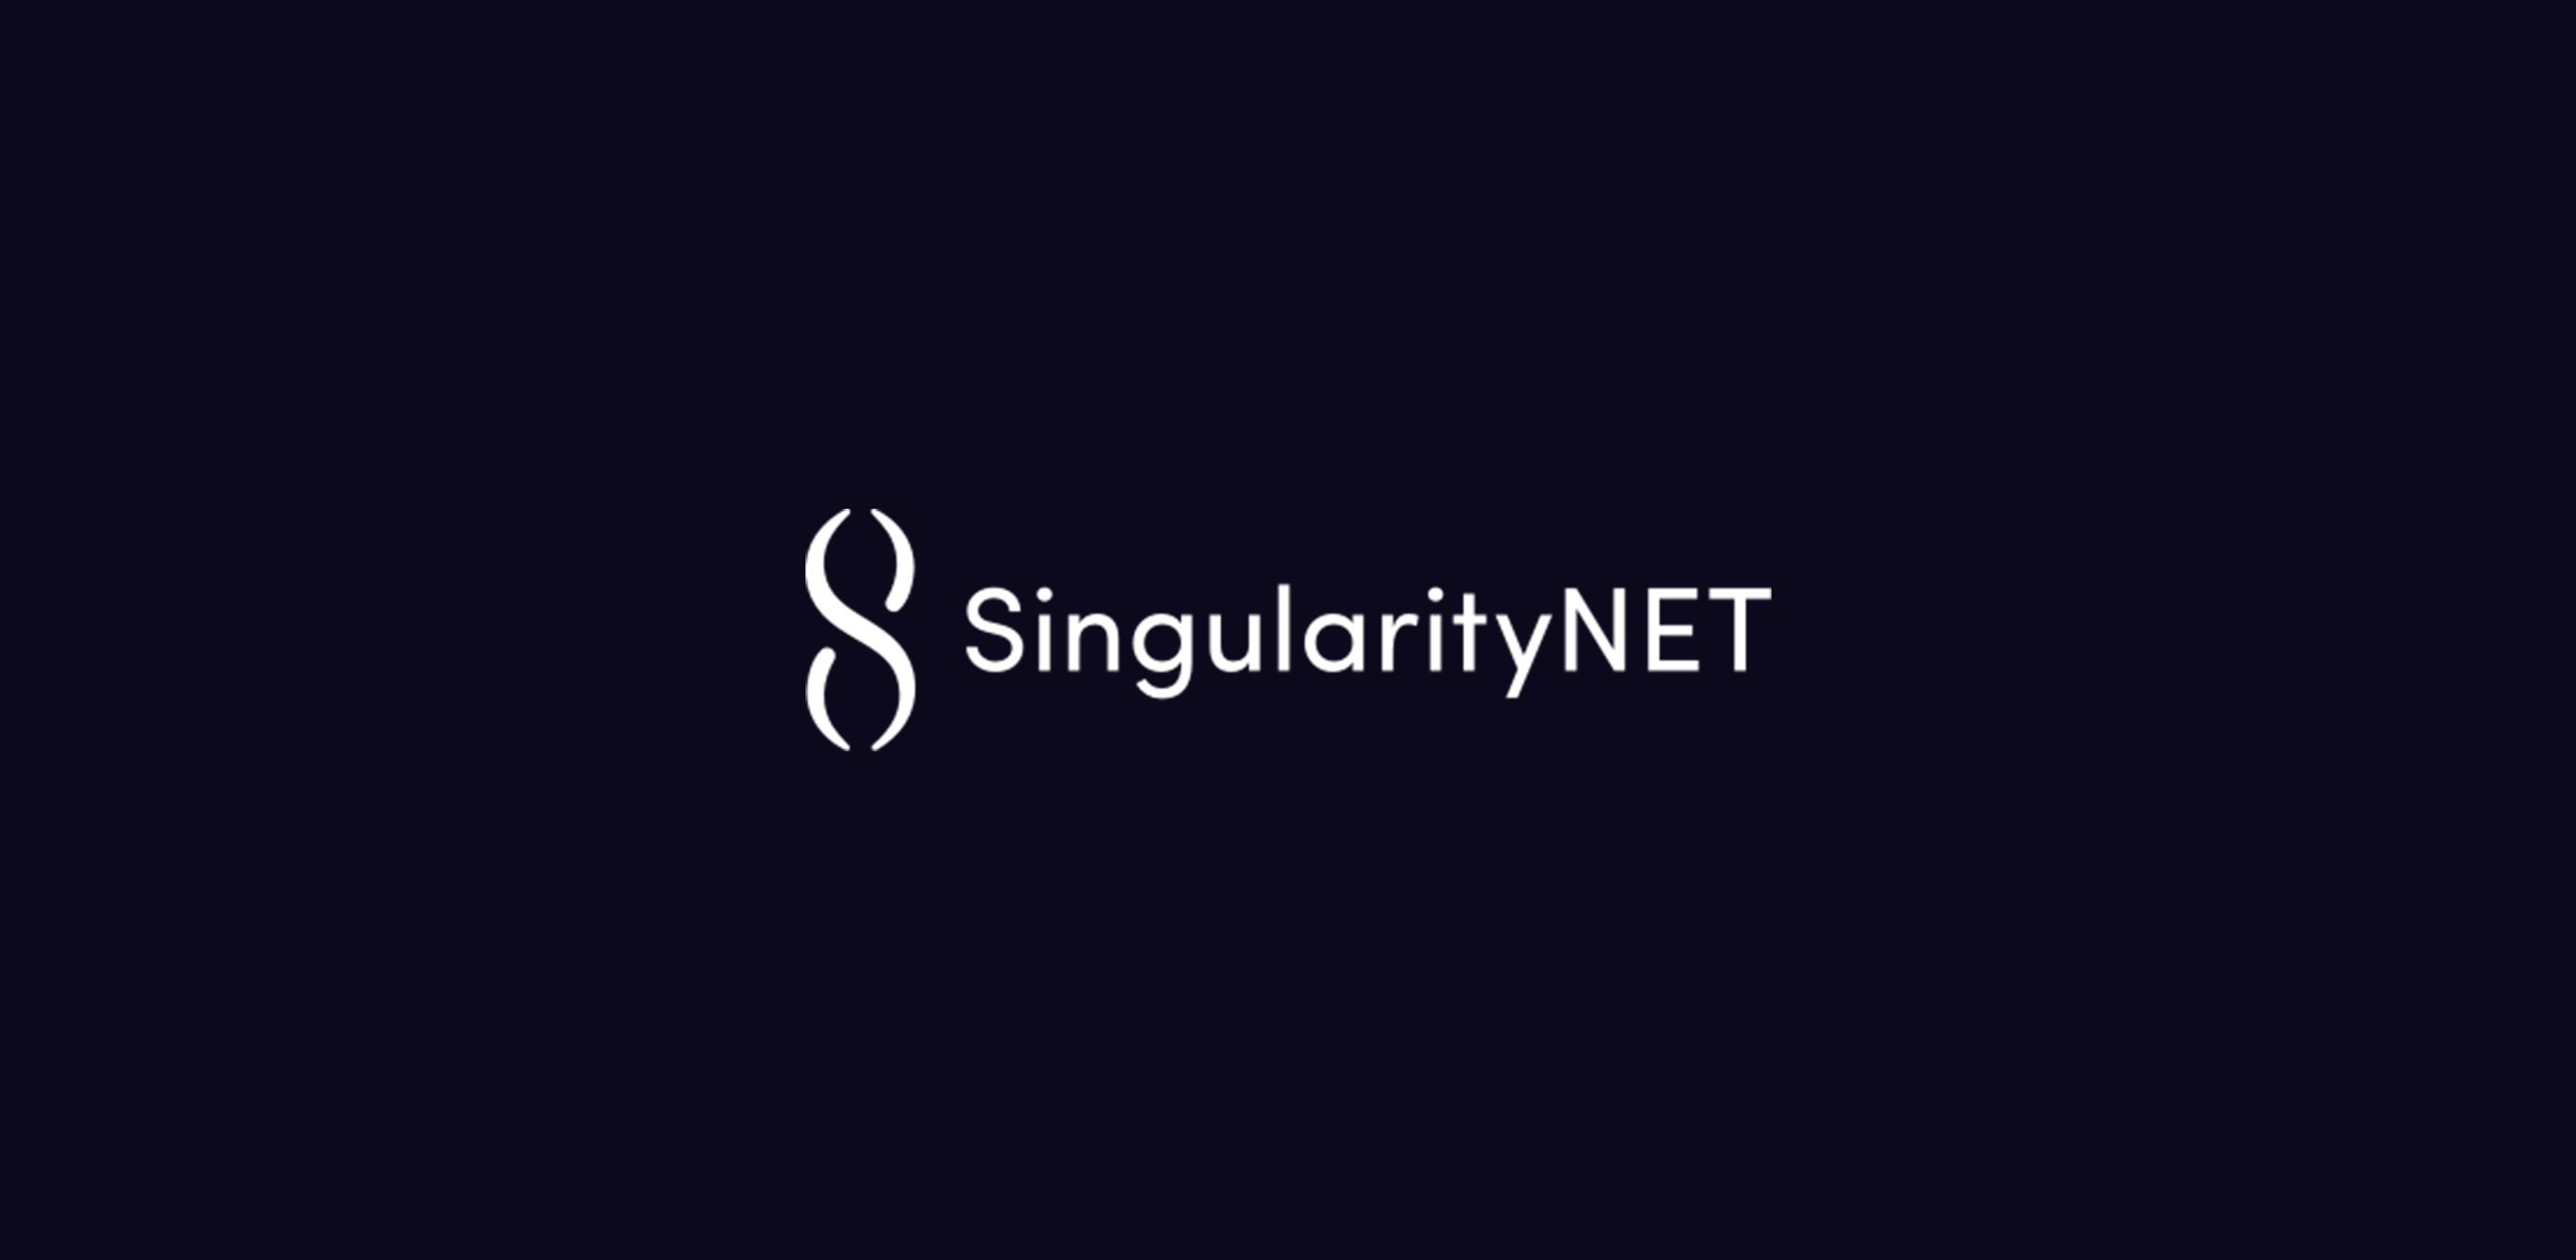 ما هي SingularityNET؟ Ultimate AI Network